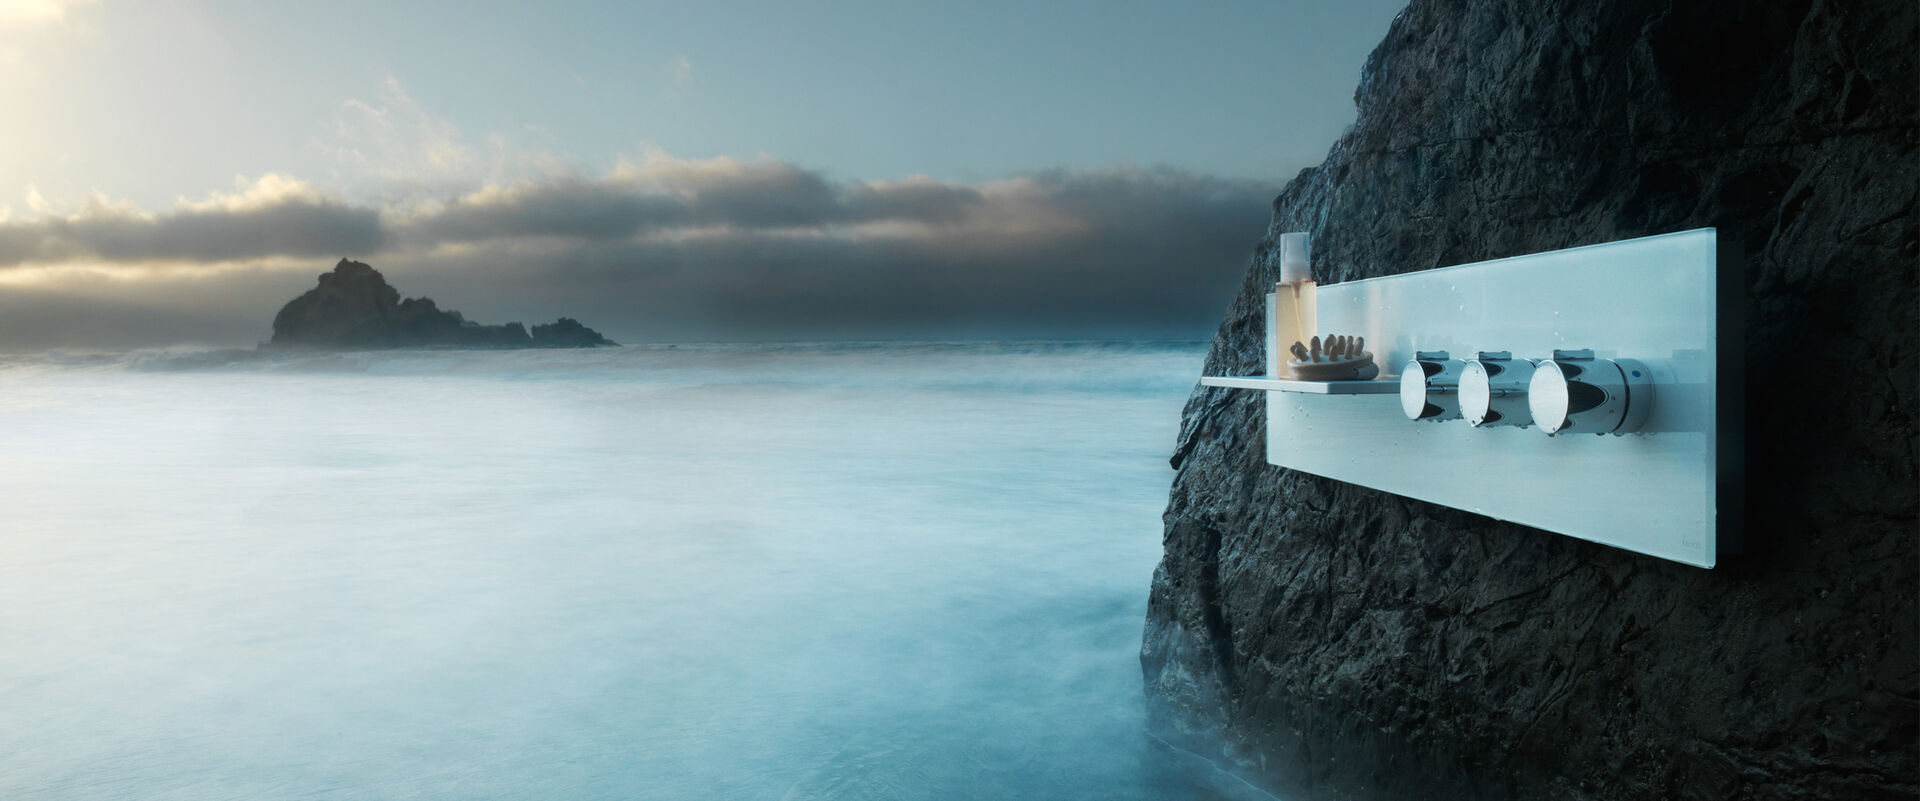 Stimmungsvolle Naturaufnahme von Meer, Brandung, Nebel, Felsen und Wolken. Überraschendes Detail: hier ist die neue Duscharmatur KEUCO meTime_spa auf einem Felsen montiert.